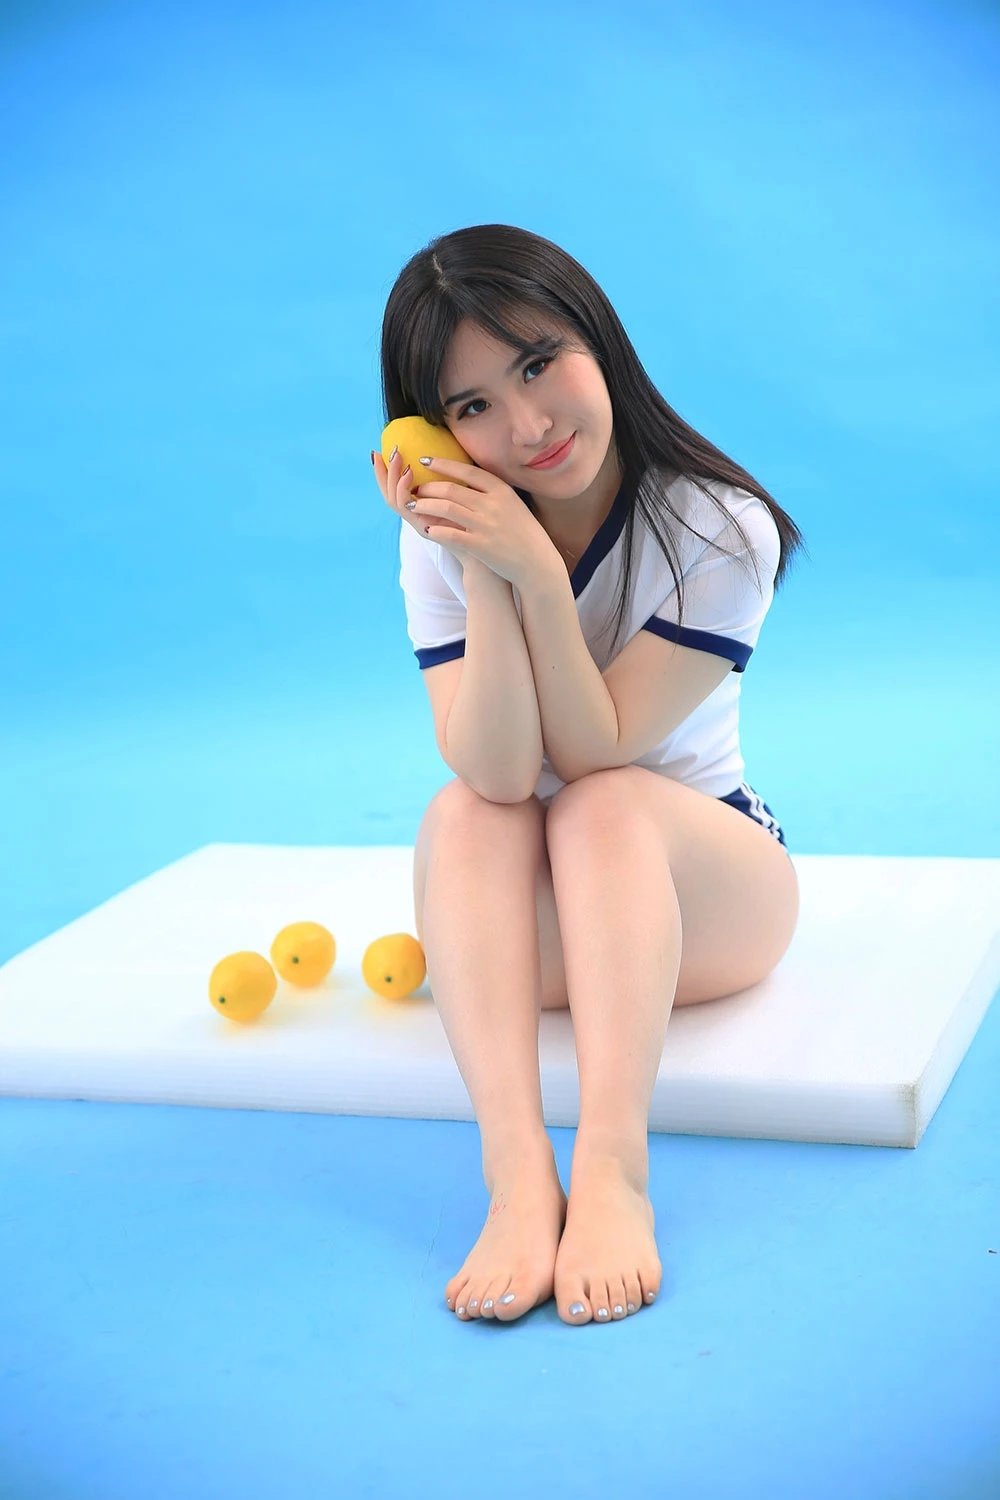 丰满微胖少女日本体操服翘臀美腿艺术照